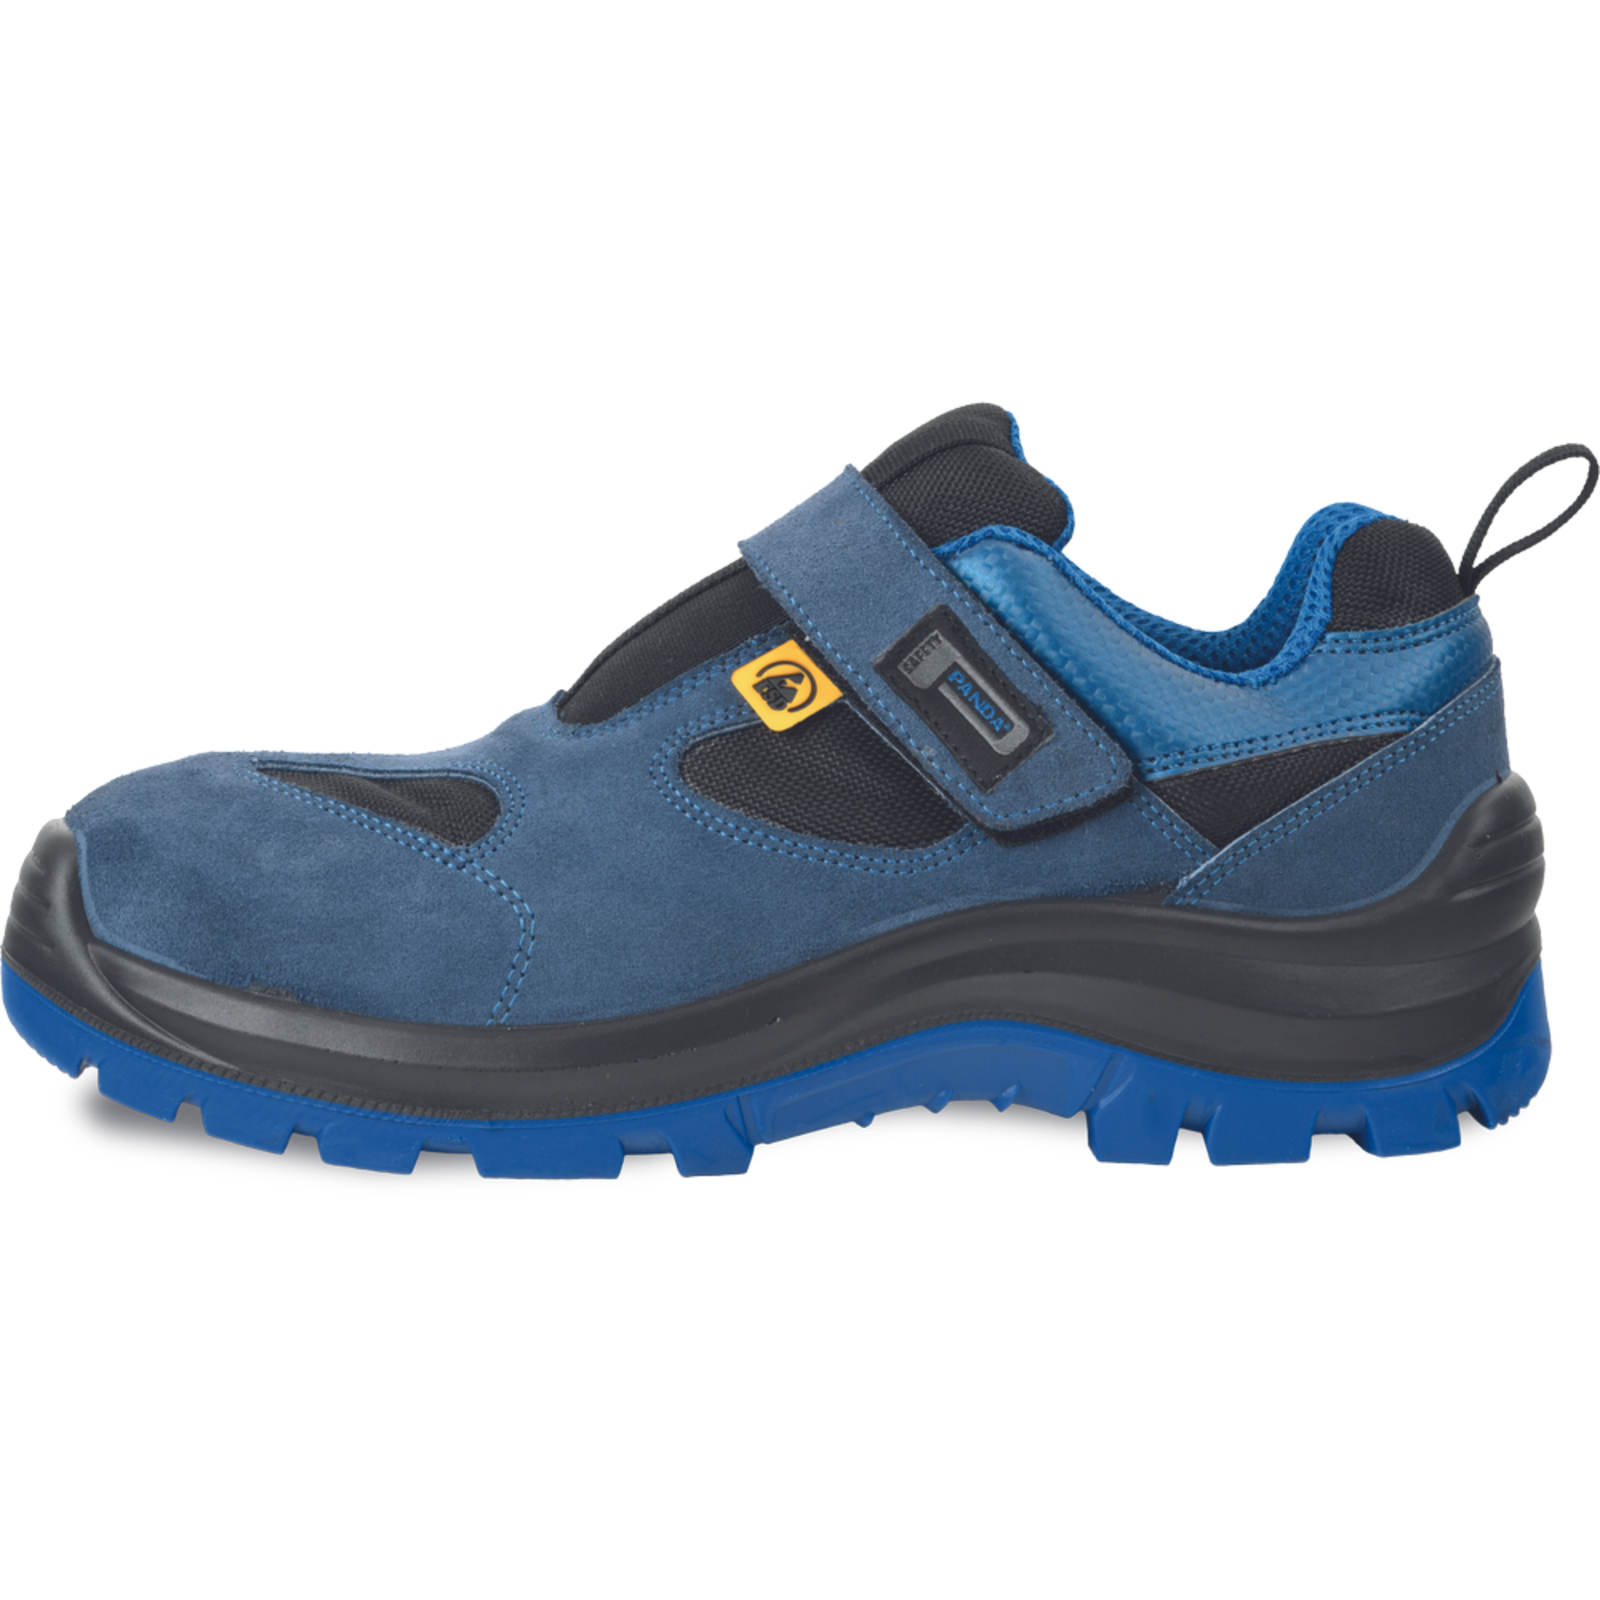 Bezpečnostné pracovné sandále Panda Wilk MF ESD S1P SRC - veľkosť: 36, farba: modrá/čierna